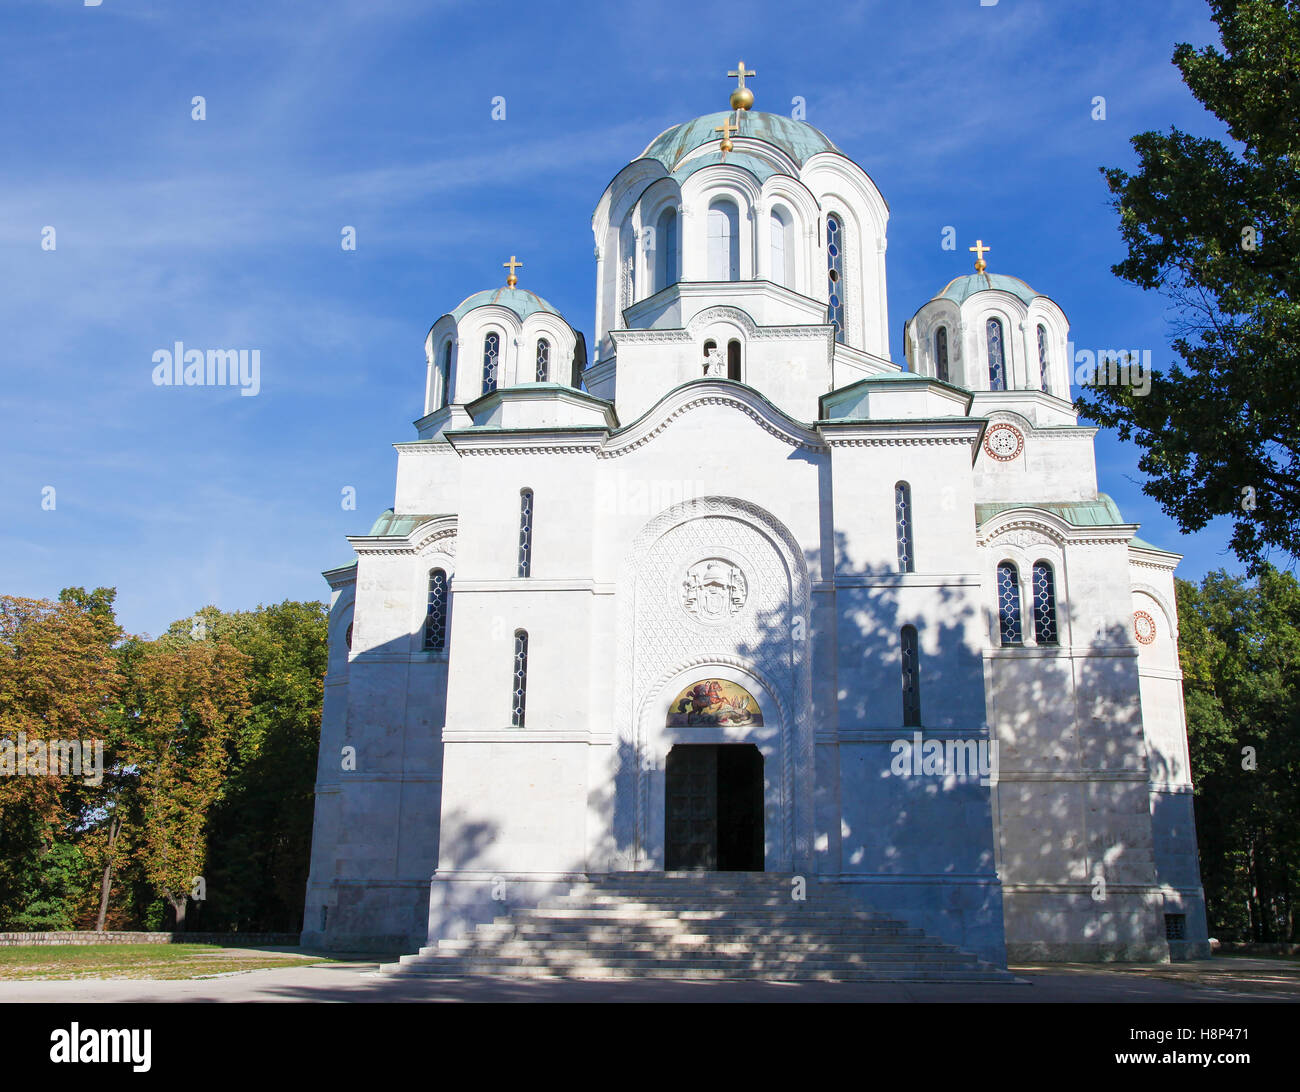 Die Kirche des Heiligen Sava ist eine serbisch-orthodoxe Kirche liegt auf der Hochebene Vracar in Belgrad. Es ist eines der größten Orthod Stockfoto